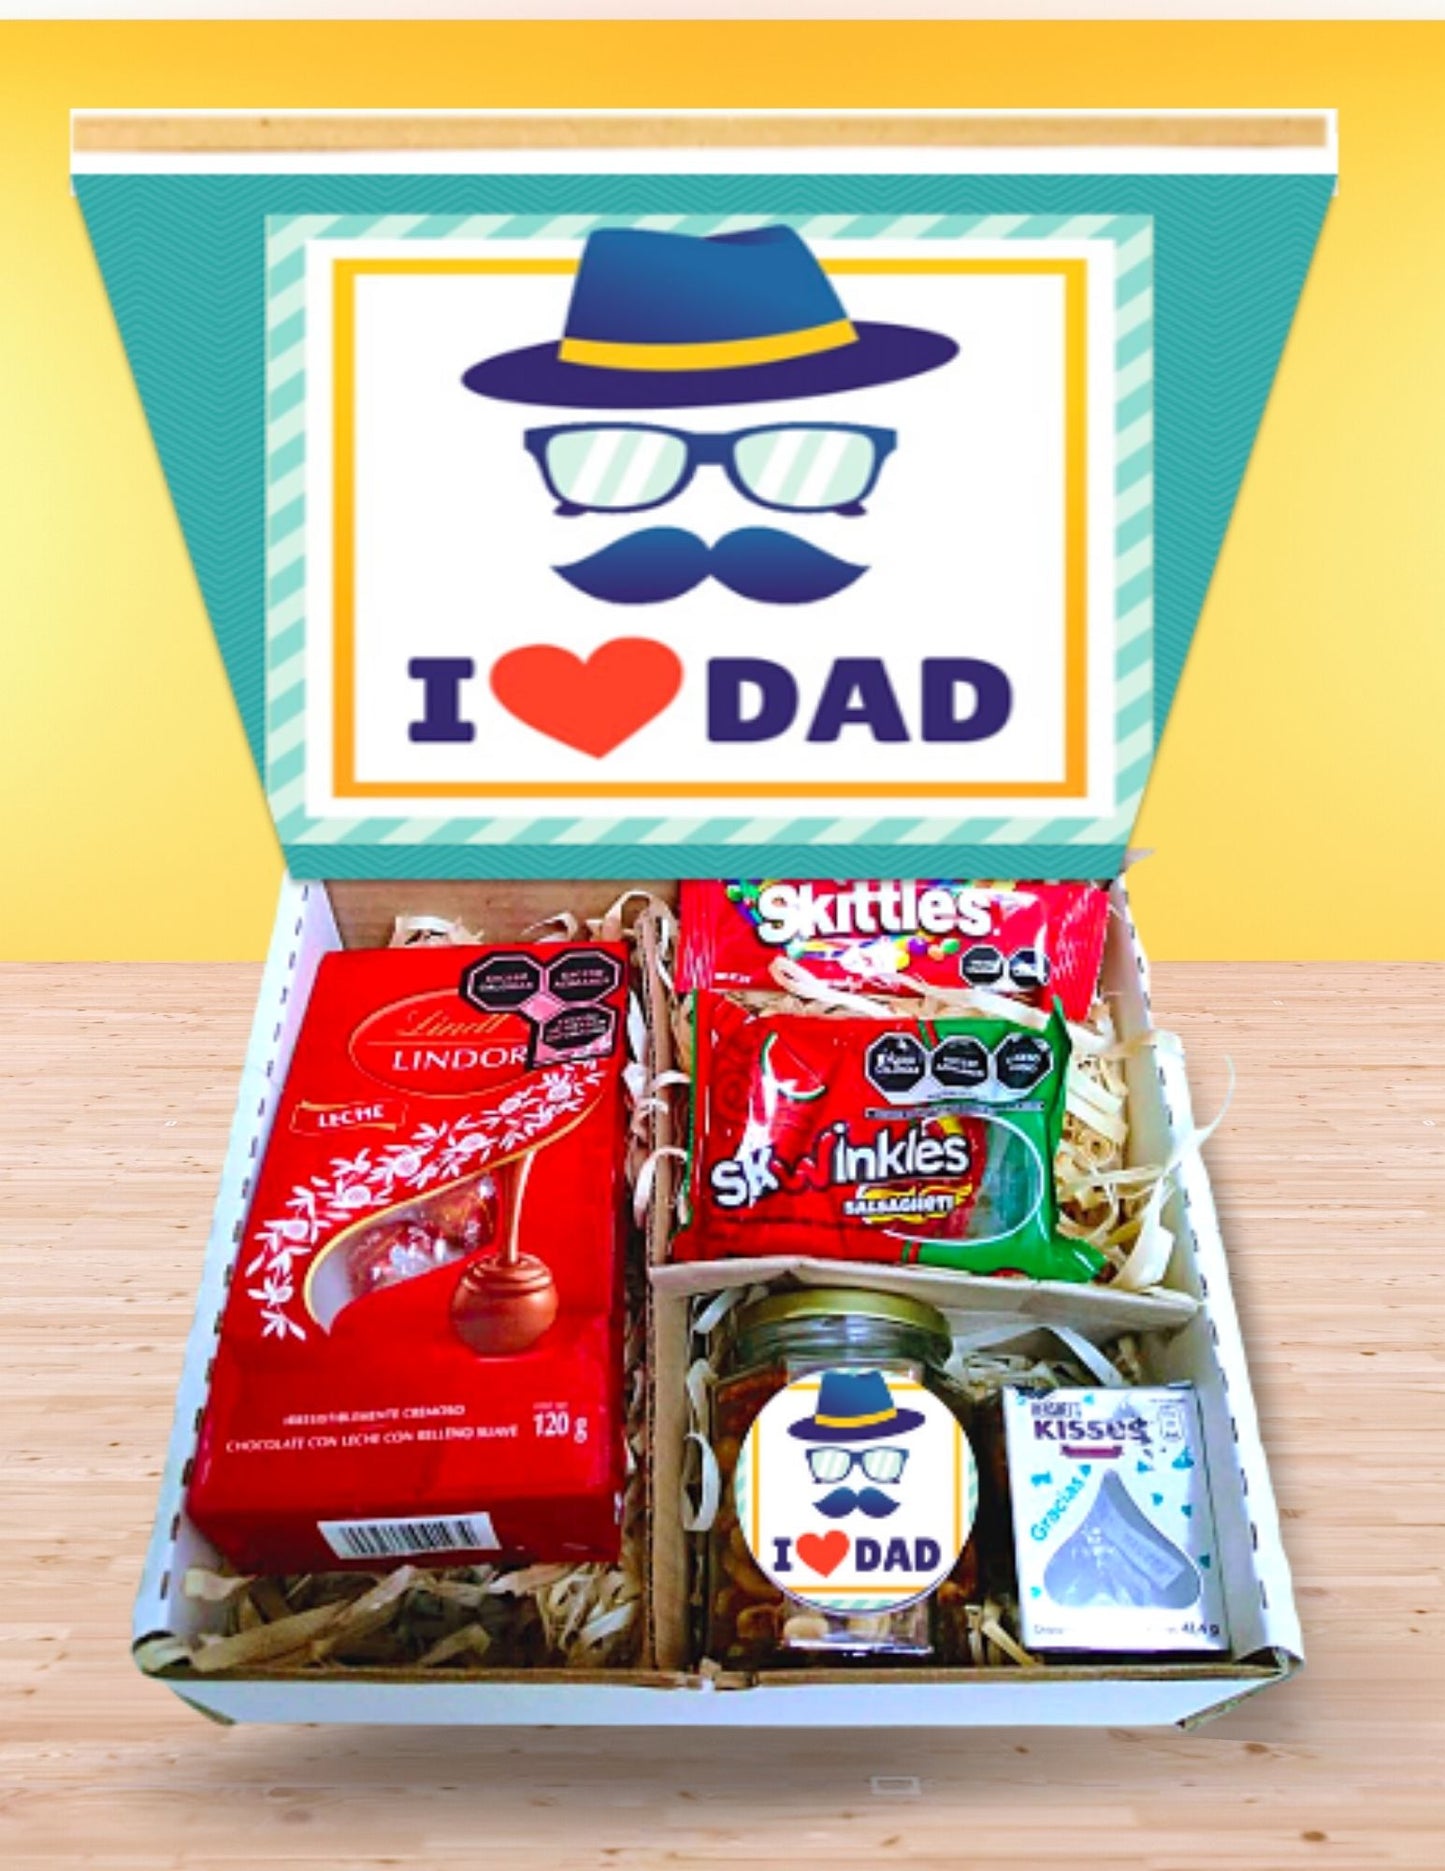 box con chocolates y botanas día del padre